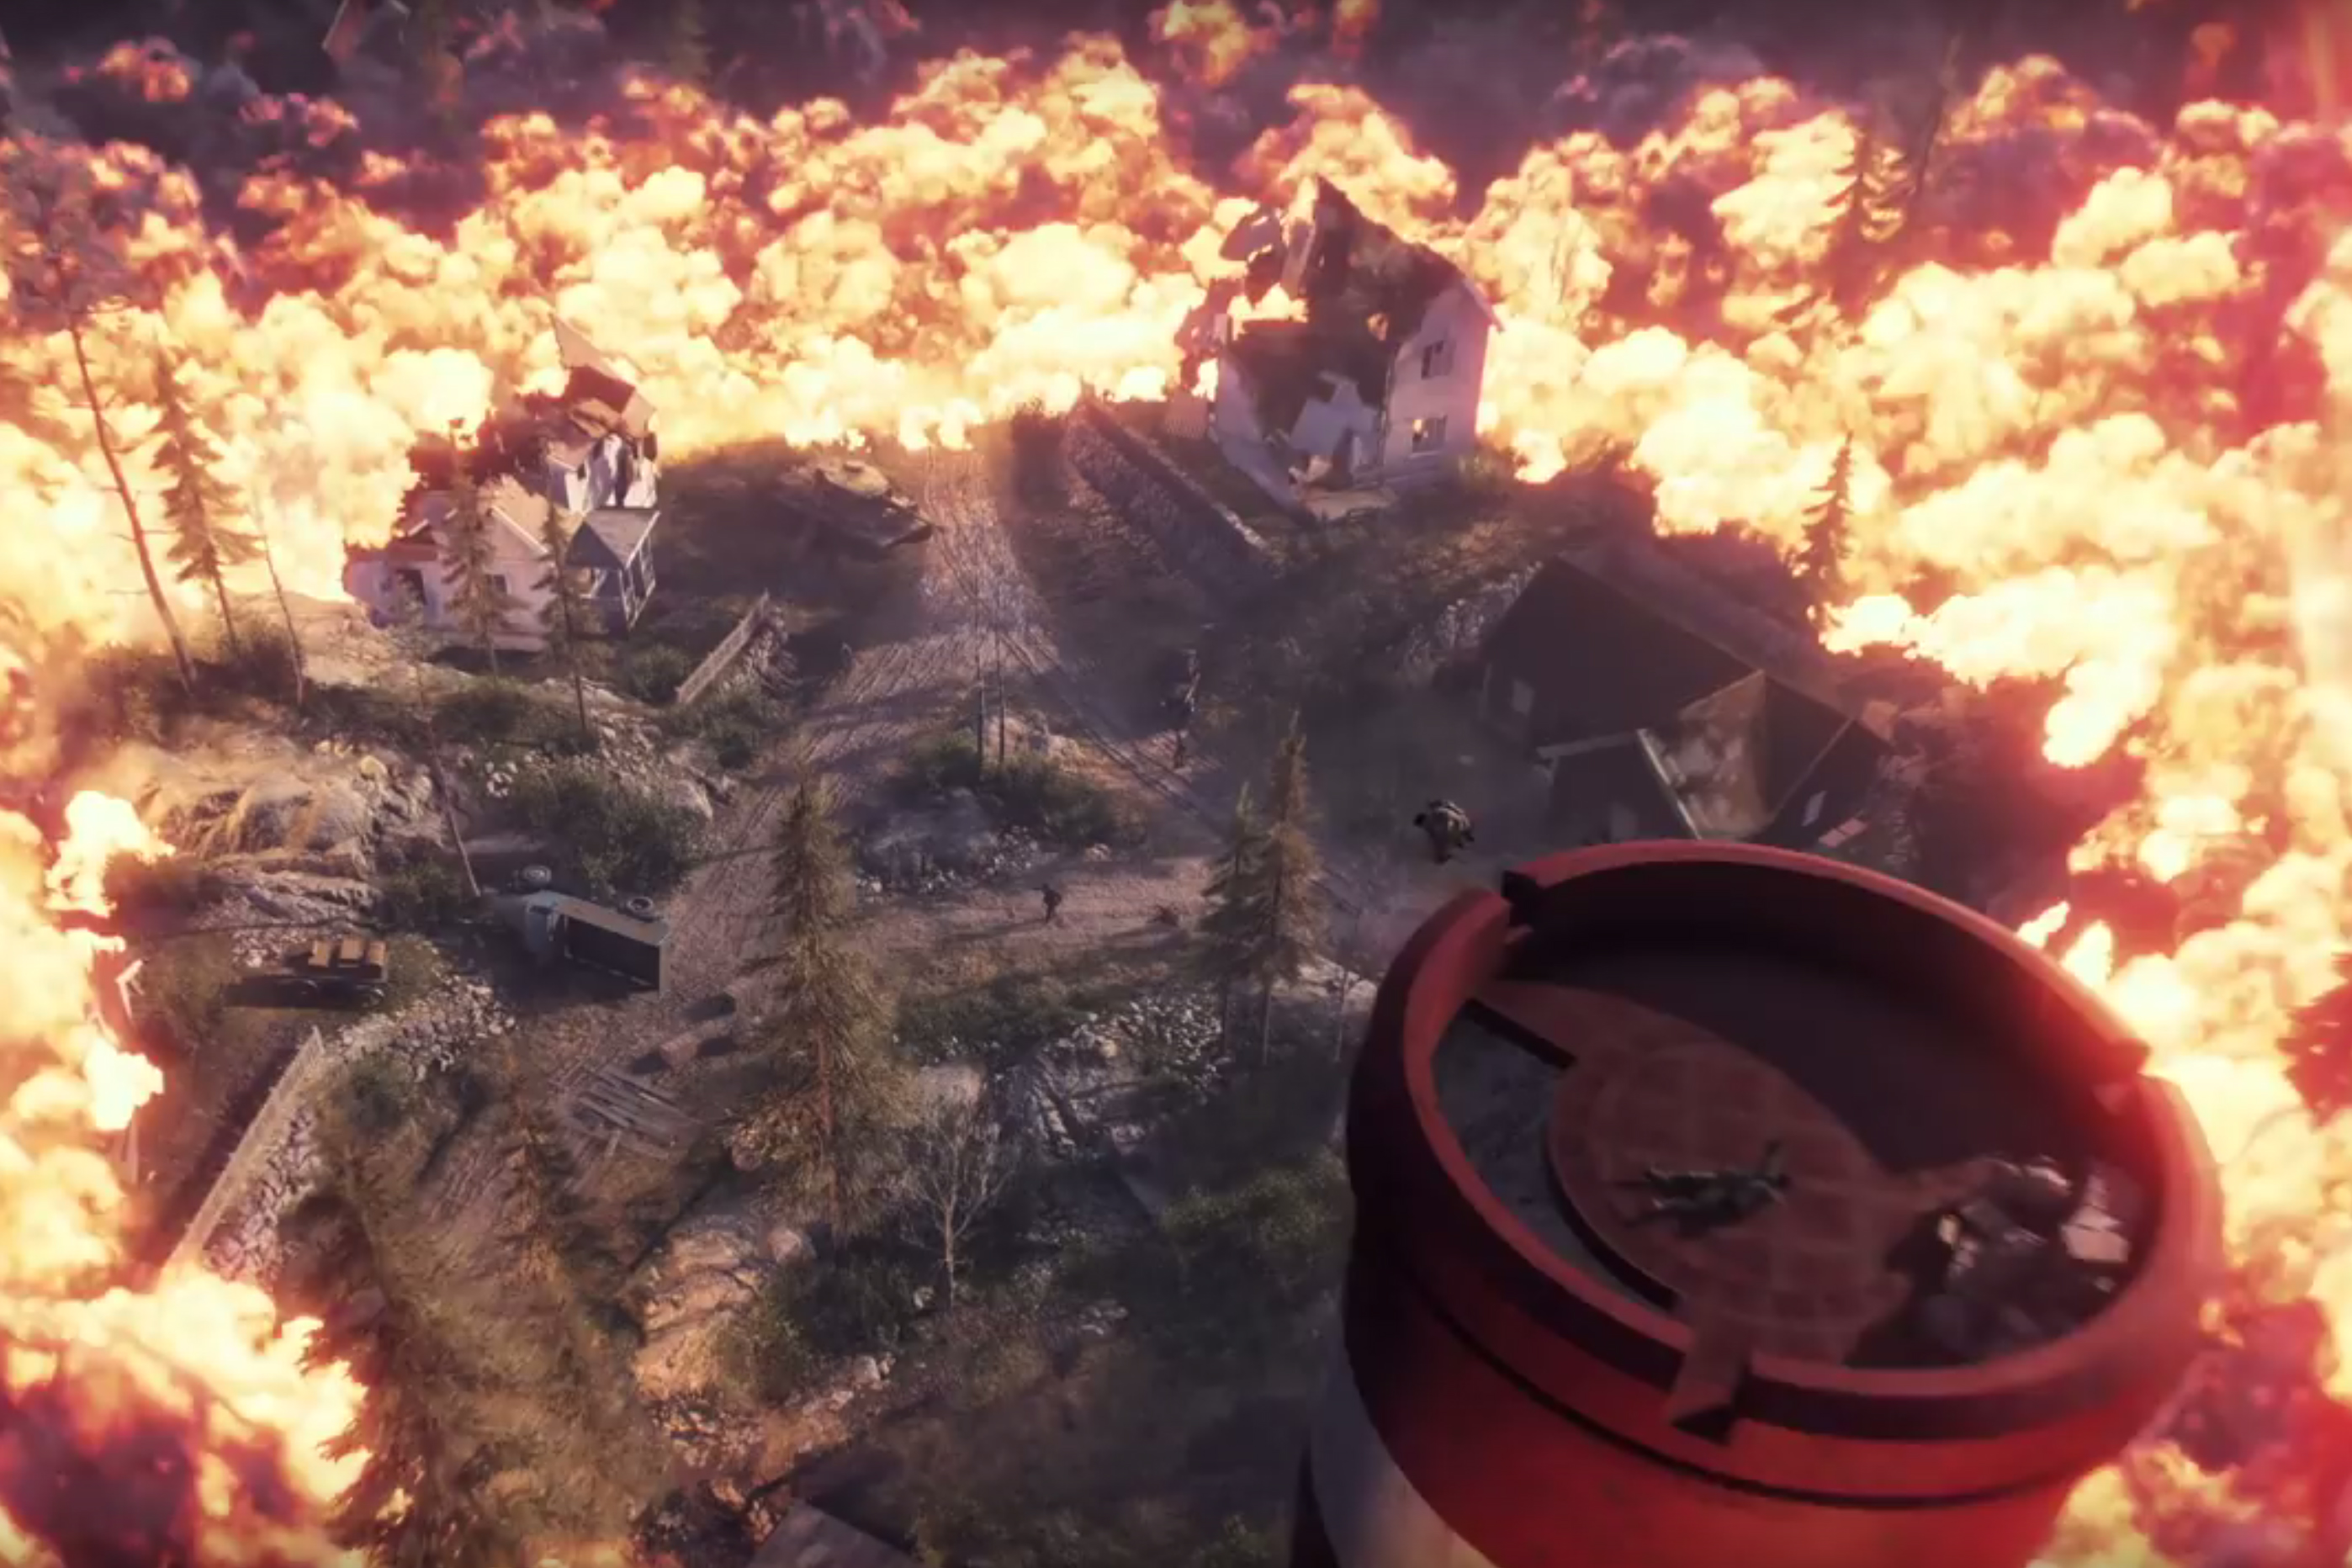 Battlefield V goes Fortnite with battle royale DLC mode confirmed